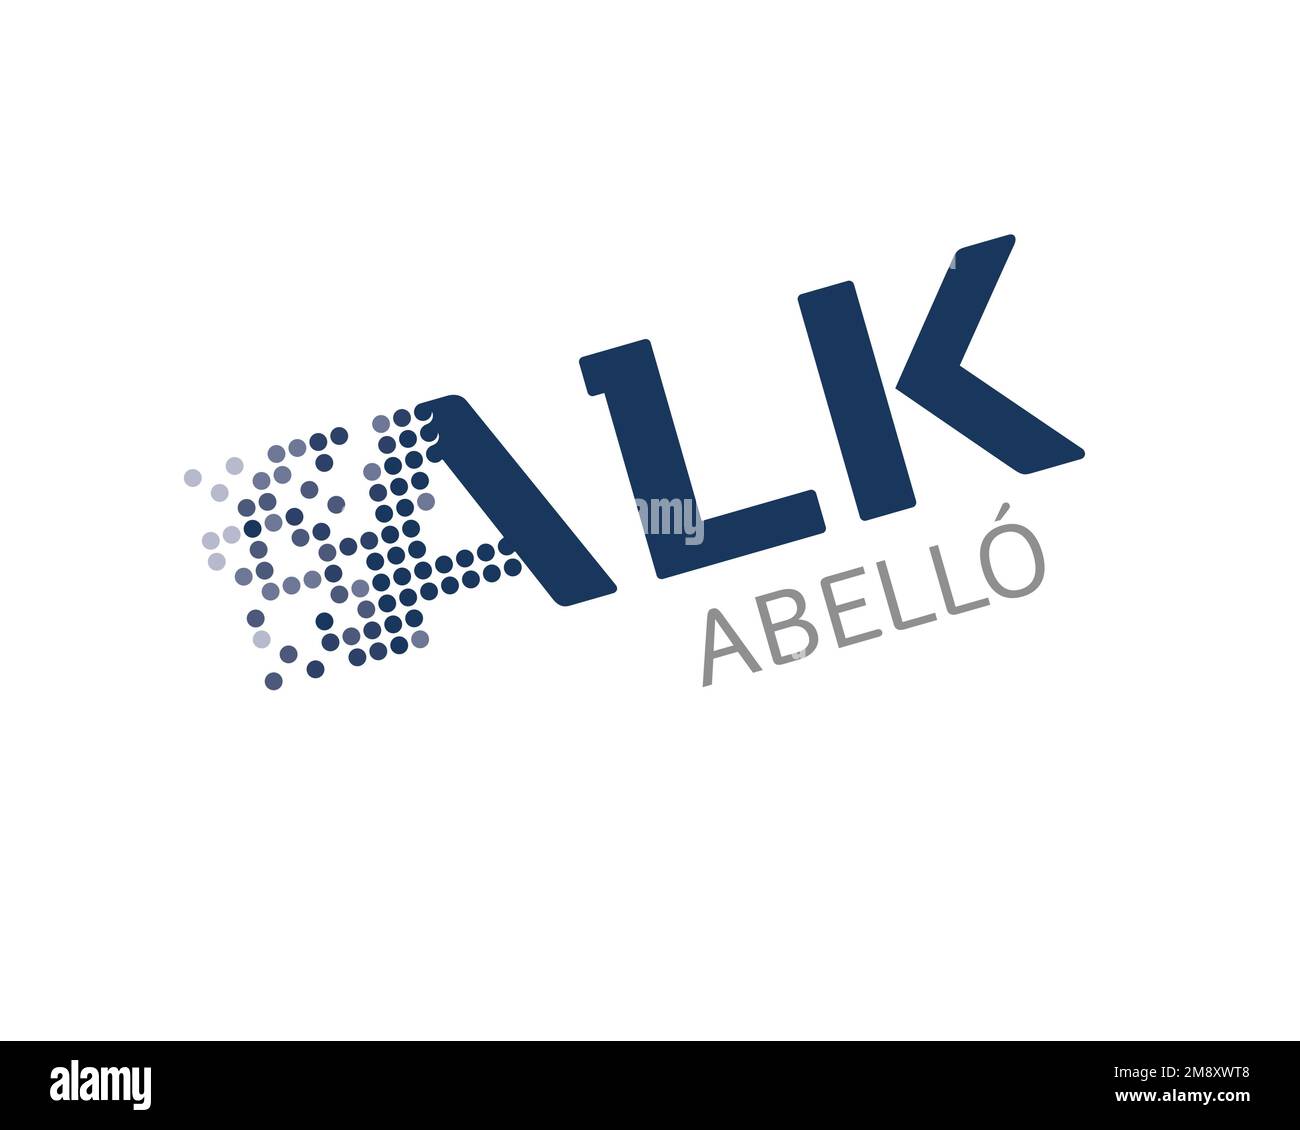 ALK Abello, rotated logo, white background Stock Photo